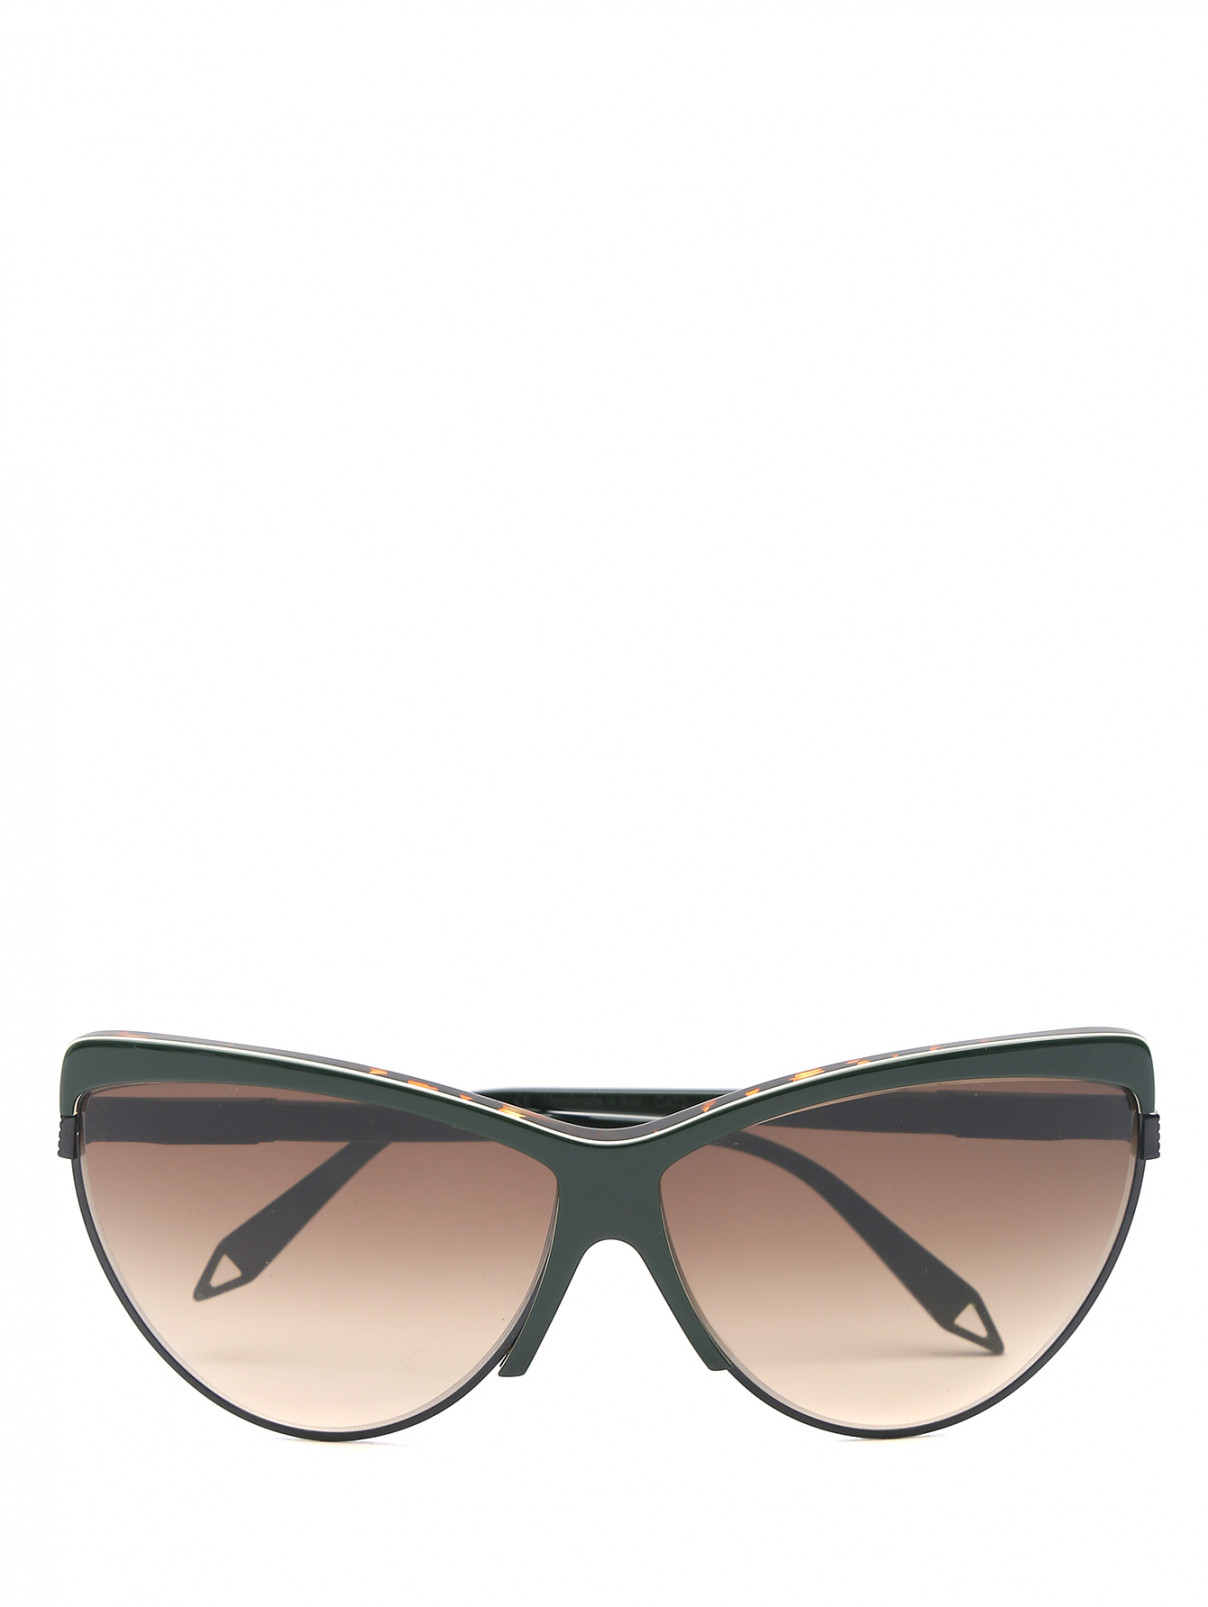 Очки солнцезащитные в оправе из пластика Viktoria Beckham  –  Общий вид  – Цвет:  Зеленый